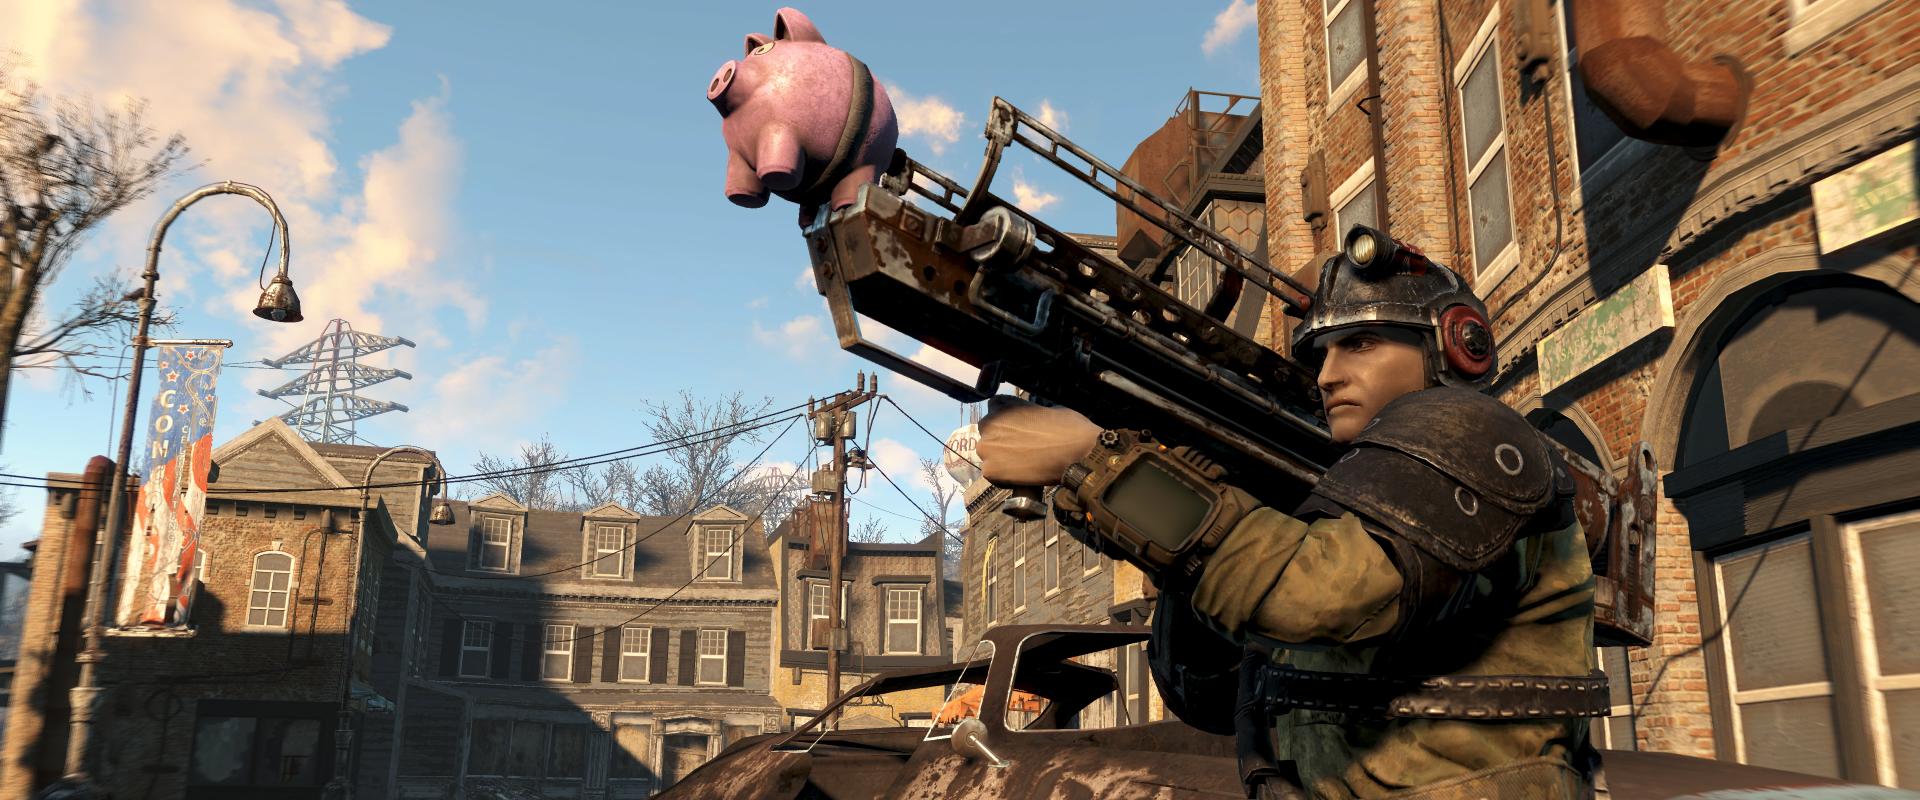 Elkapkodták a Fallout 4-et, kifogytak a boltok a dobozos példányokból